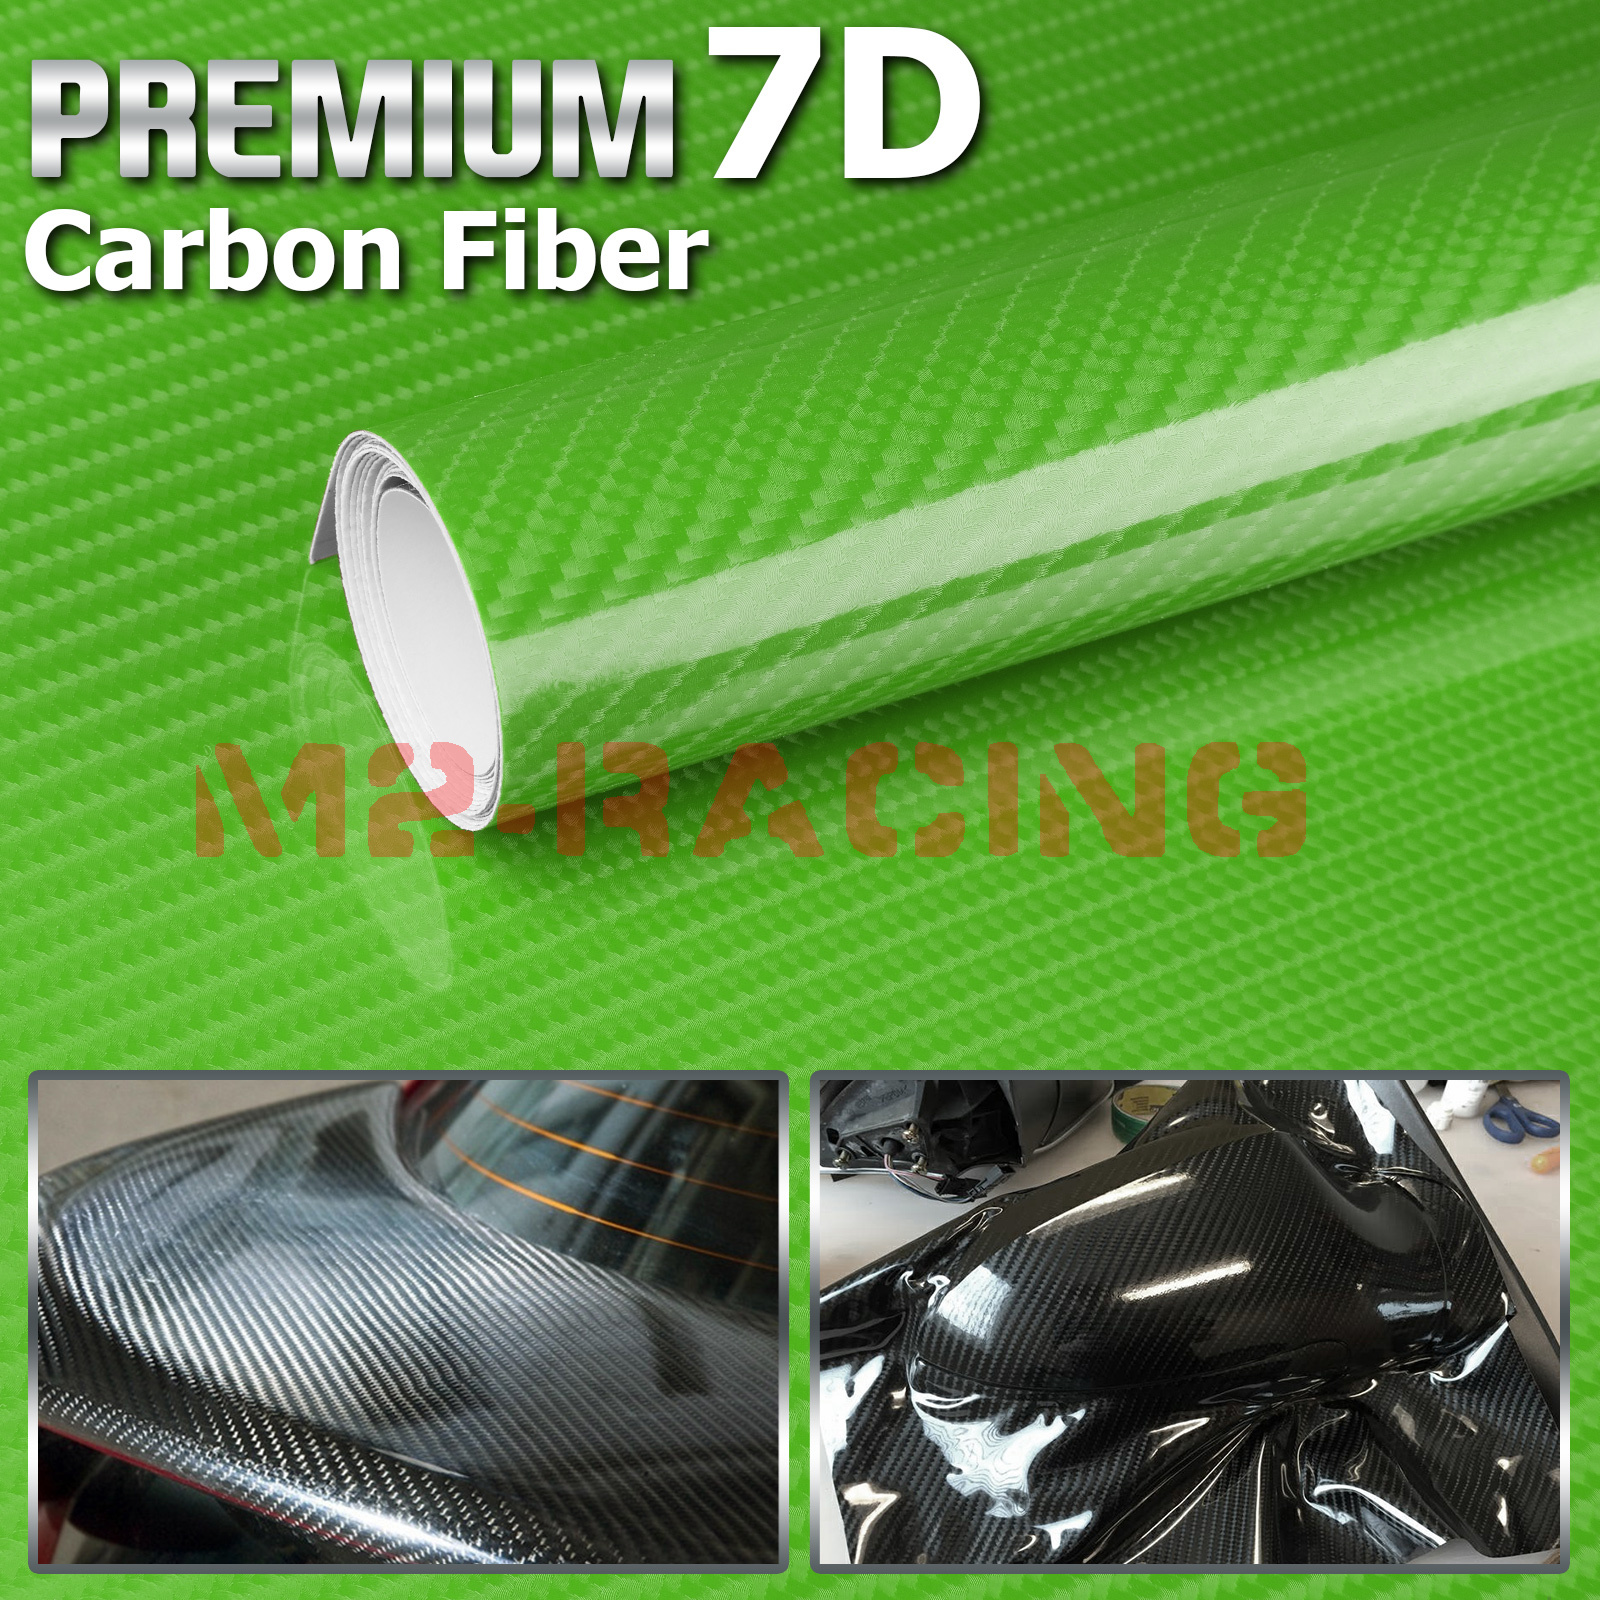 HIGH GLOSS 6D Premium Carbon Fiber Vinyl Film Wrap Bubble Free Air Release 